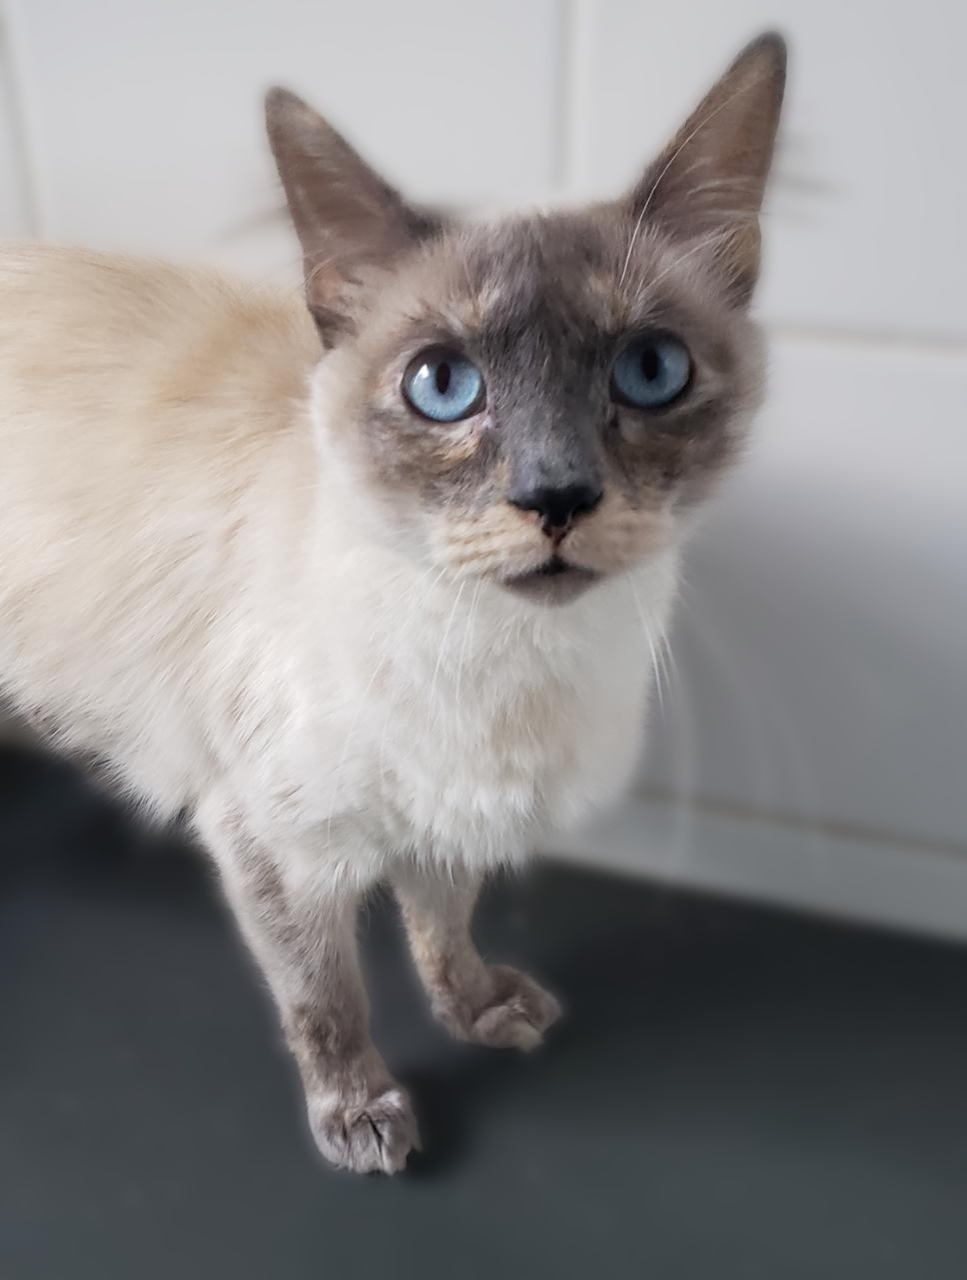 #PraCegoVer: Fotografia da gatinha Emma. Ela é branca, tem o rostinho acinzentado e os olhos azuis. Ela está olhando fixamente para a câmera.